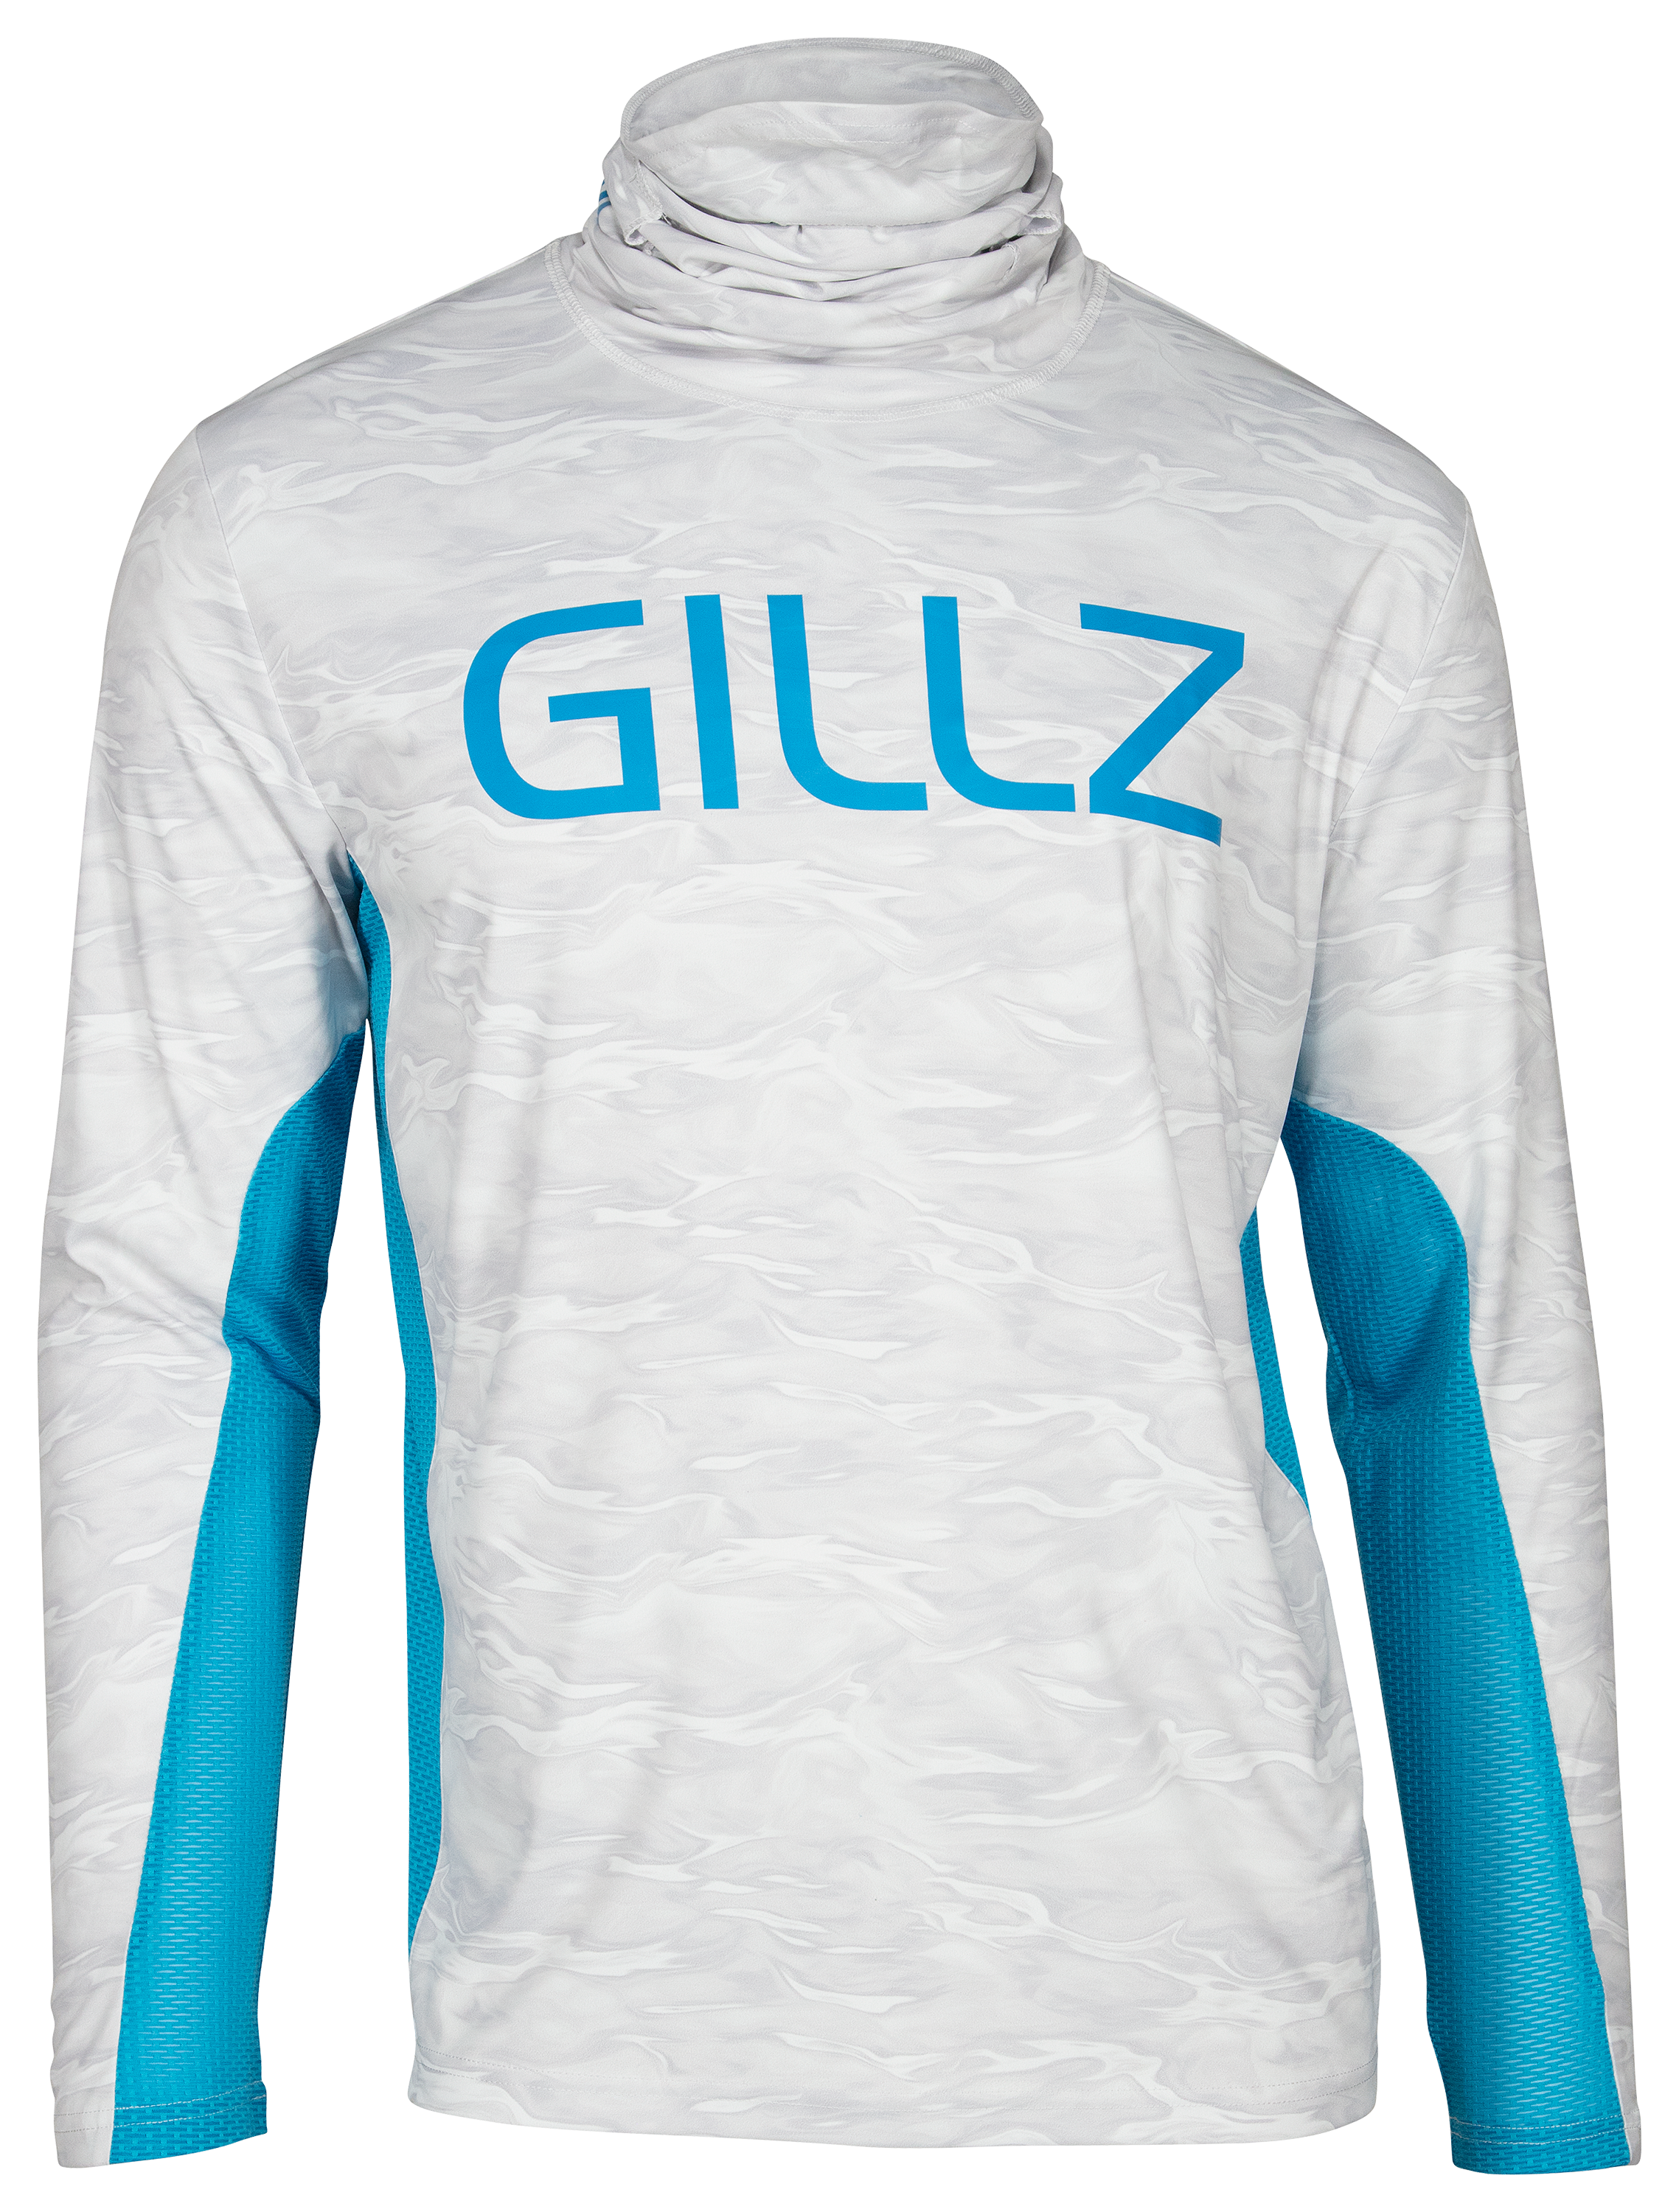 Gillz Pro-Striker Long-Sleeve Shirt for Men